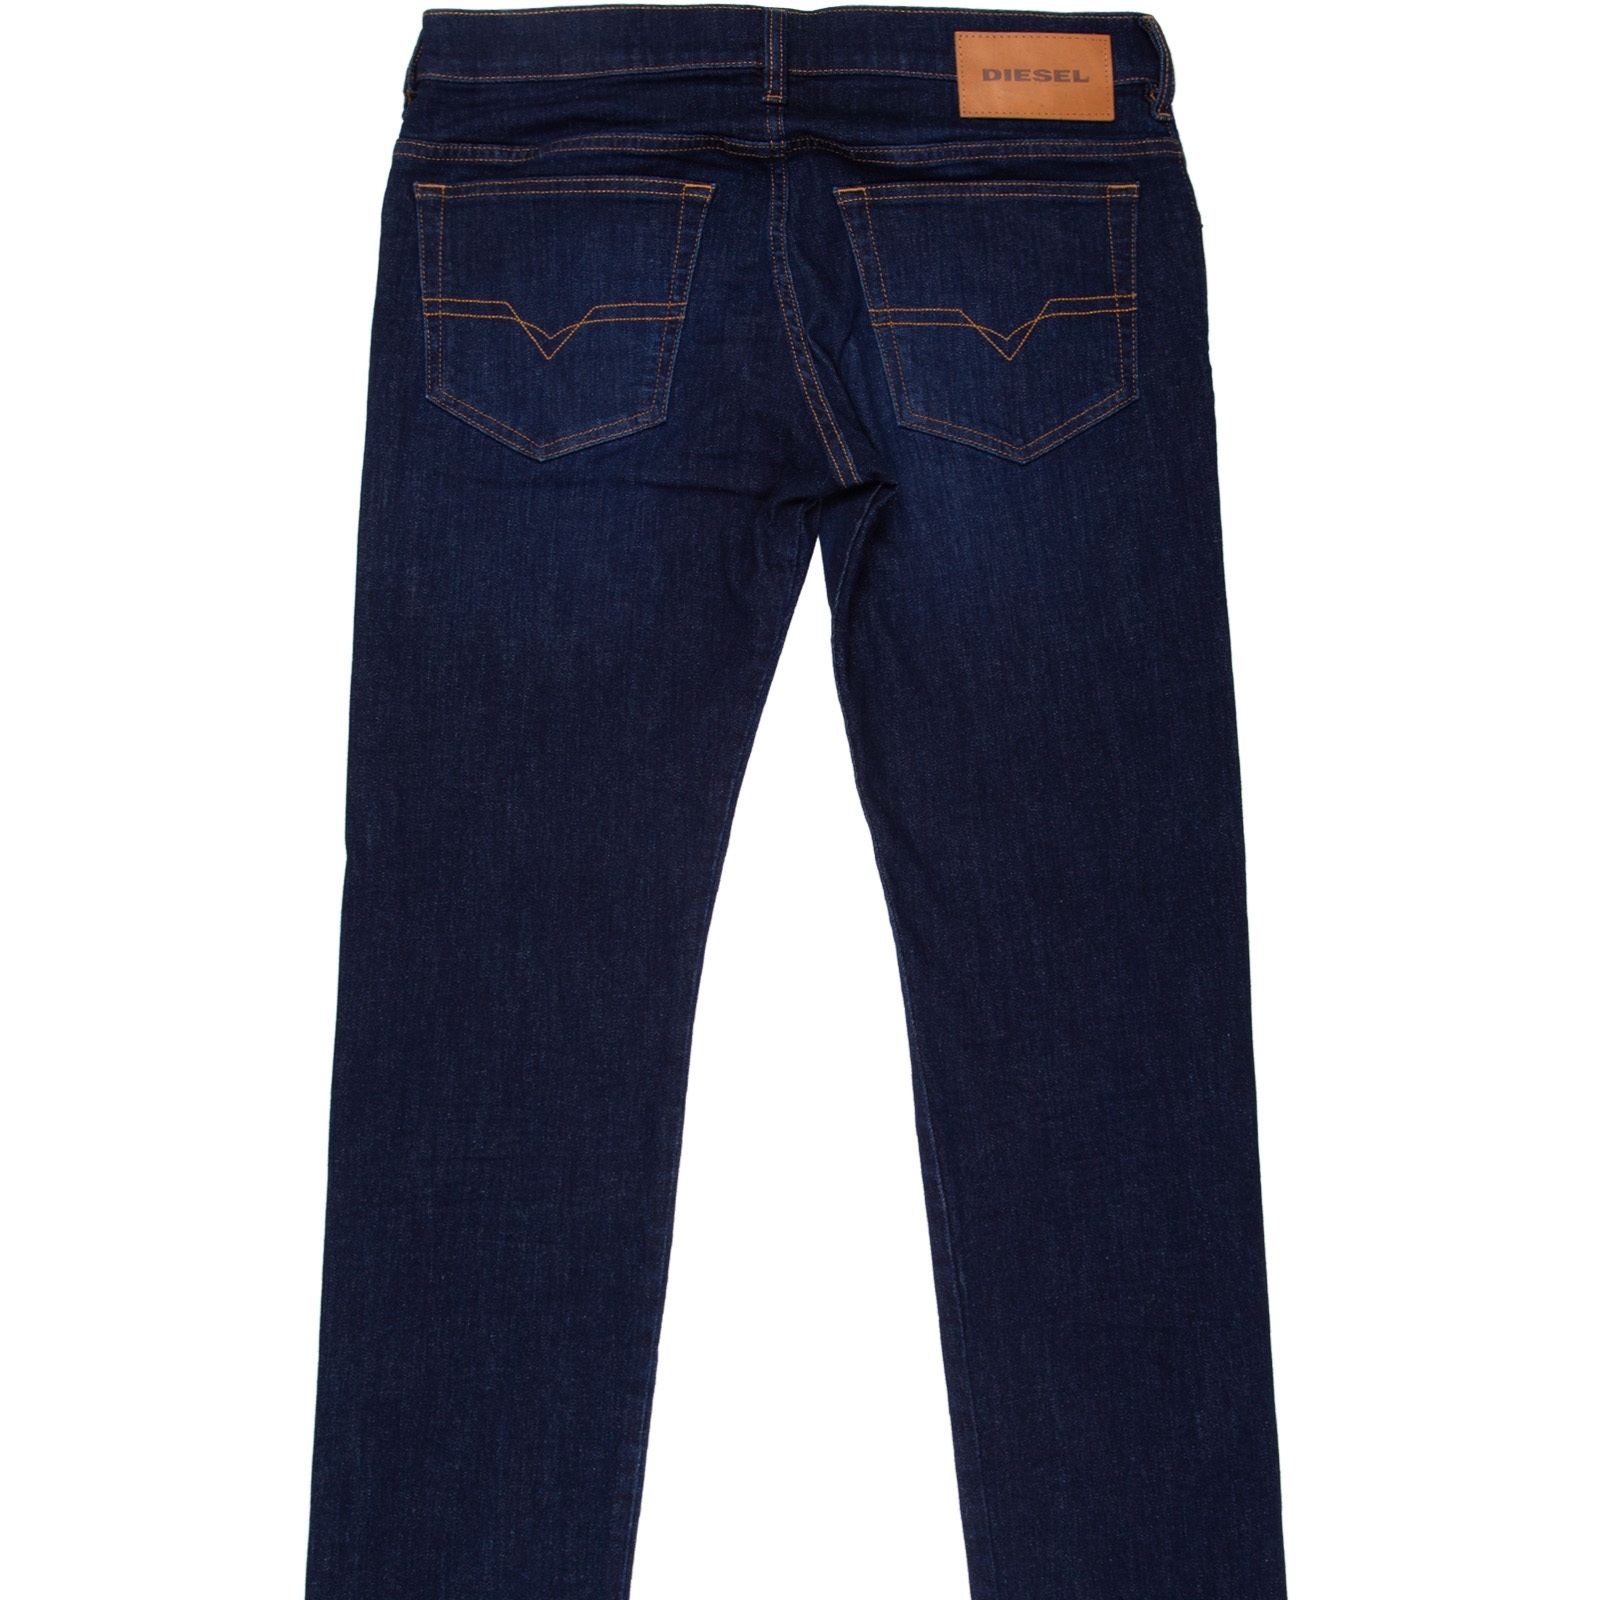 D-Yennox Taper Fit Dark Aged Stretch Denim Jeans - DESIGNERS-Diesel ...